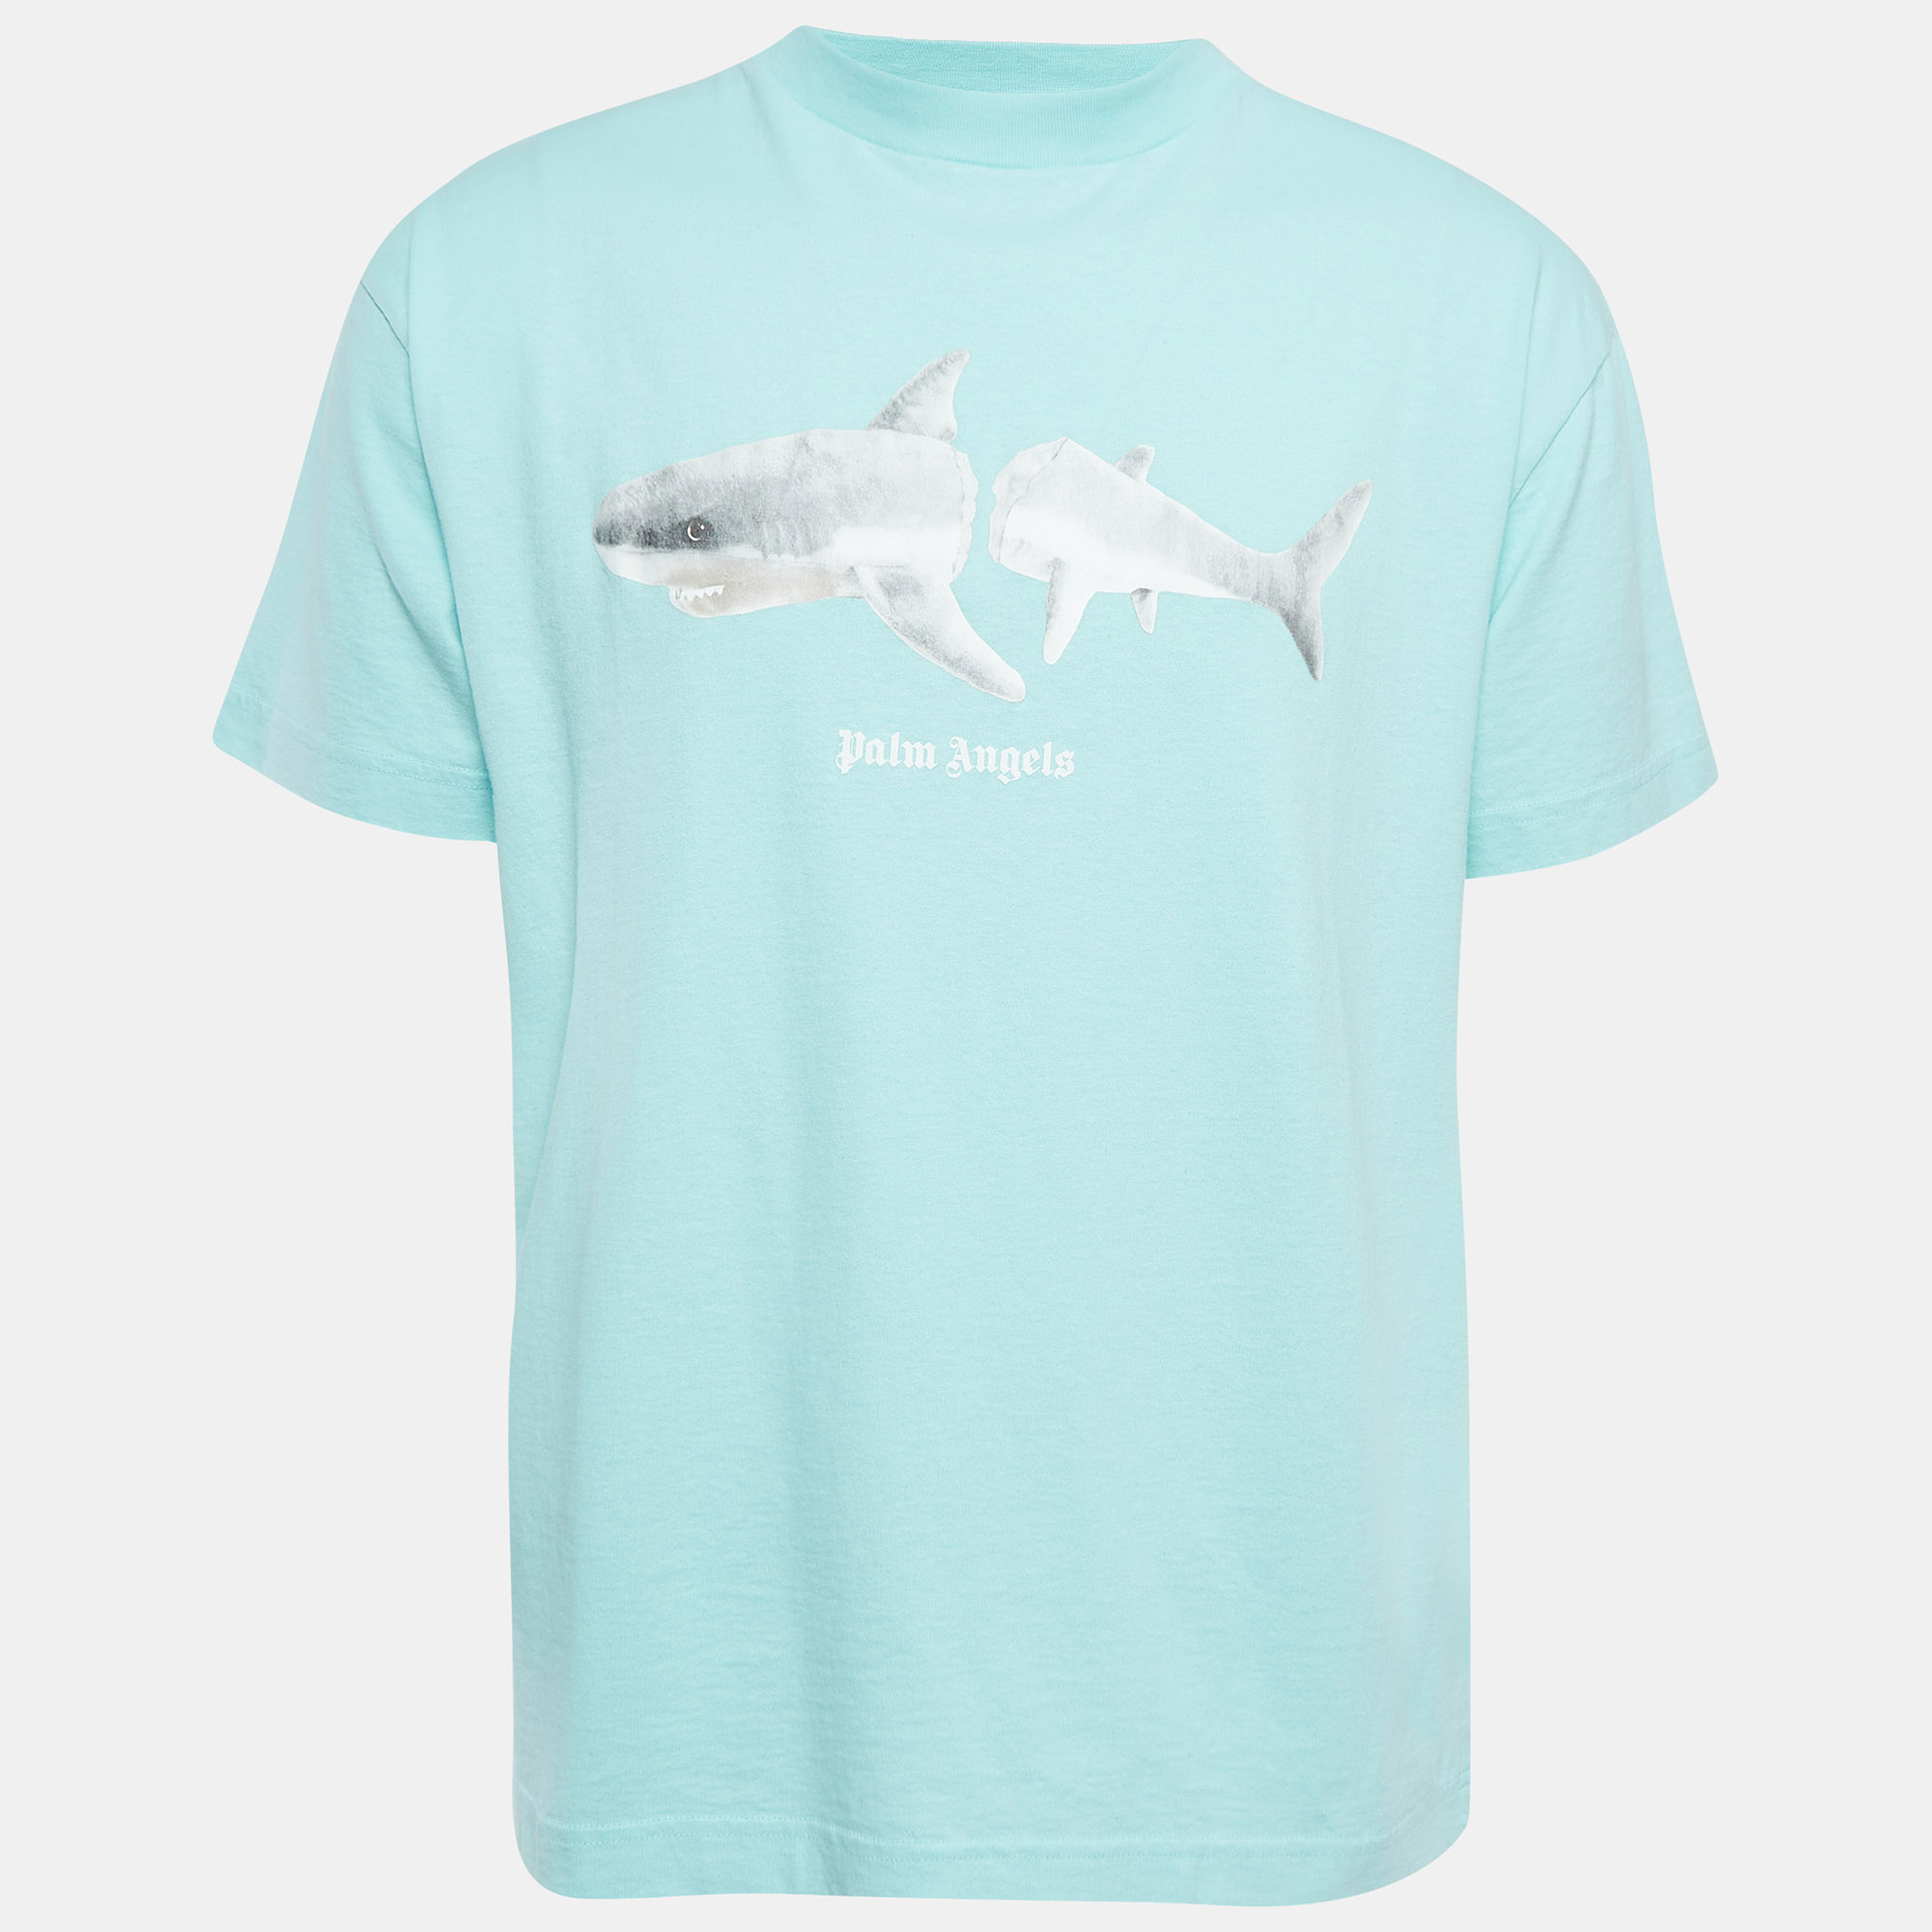 

Palm Angels Blue Broken Shark Print Cotton T-Shirt